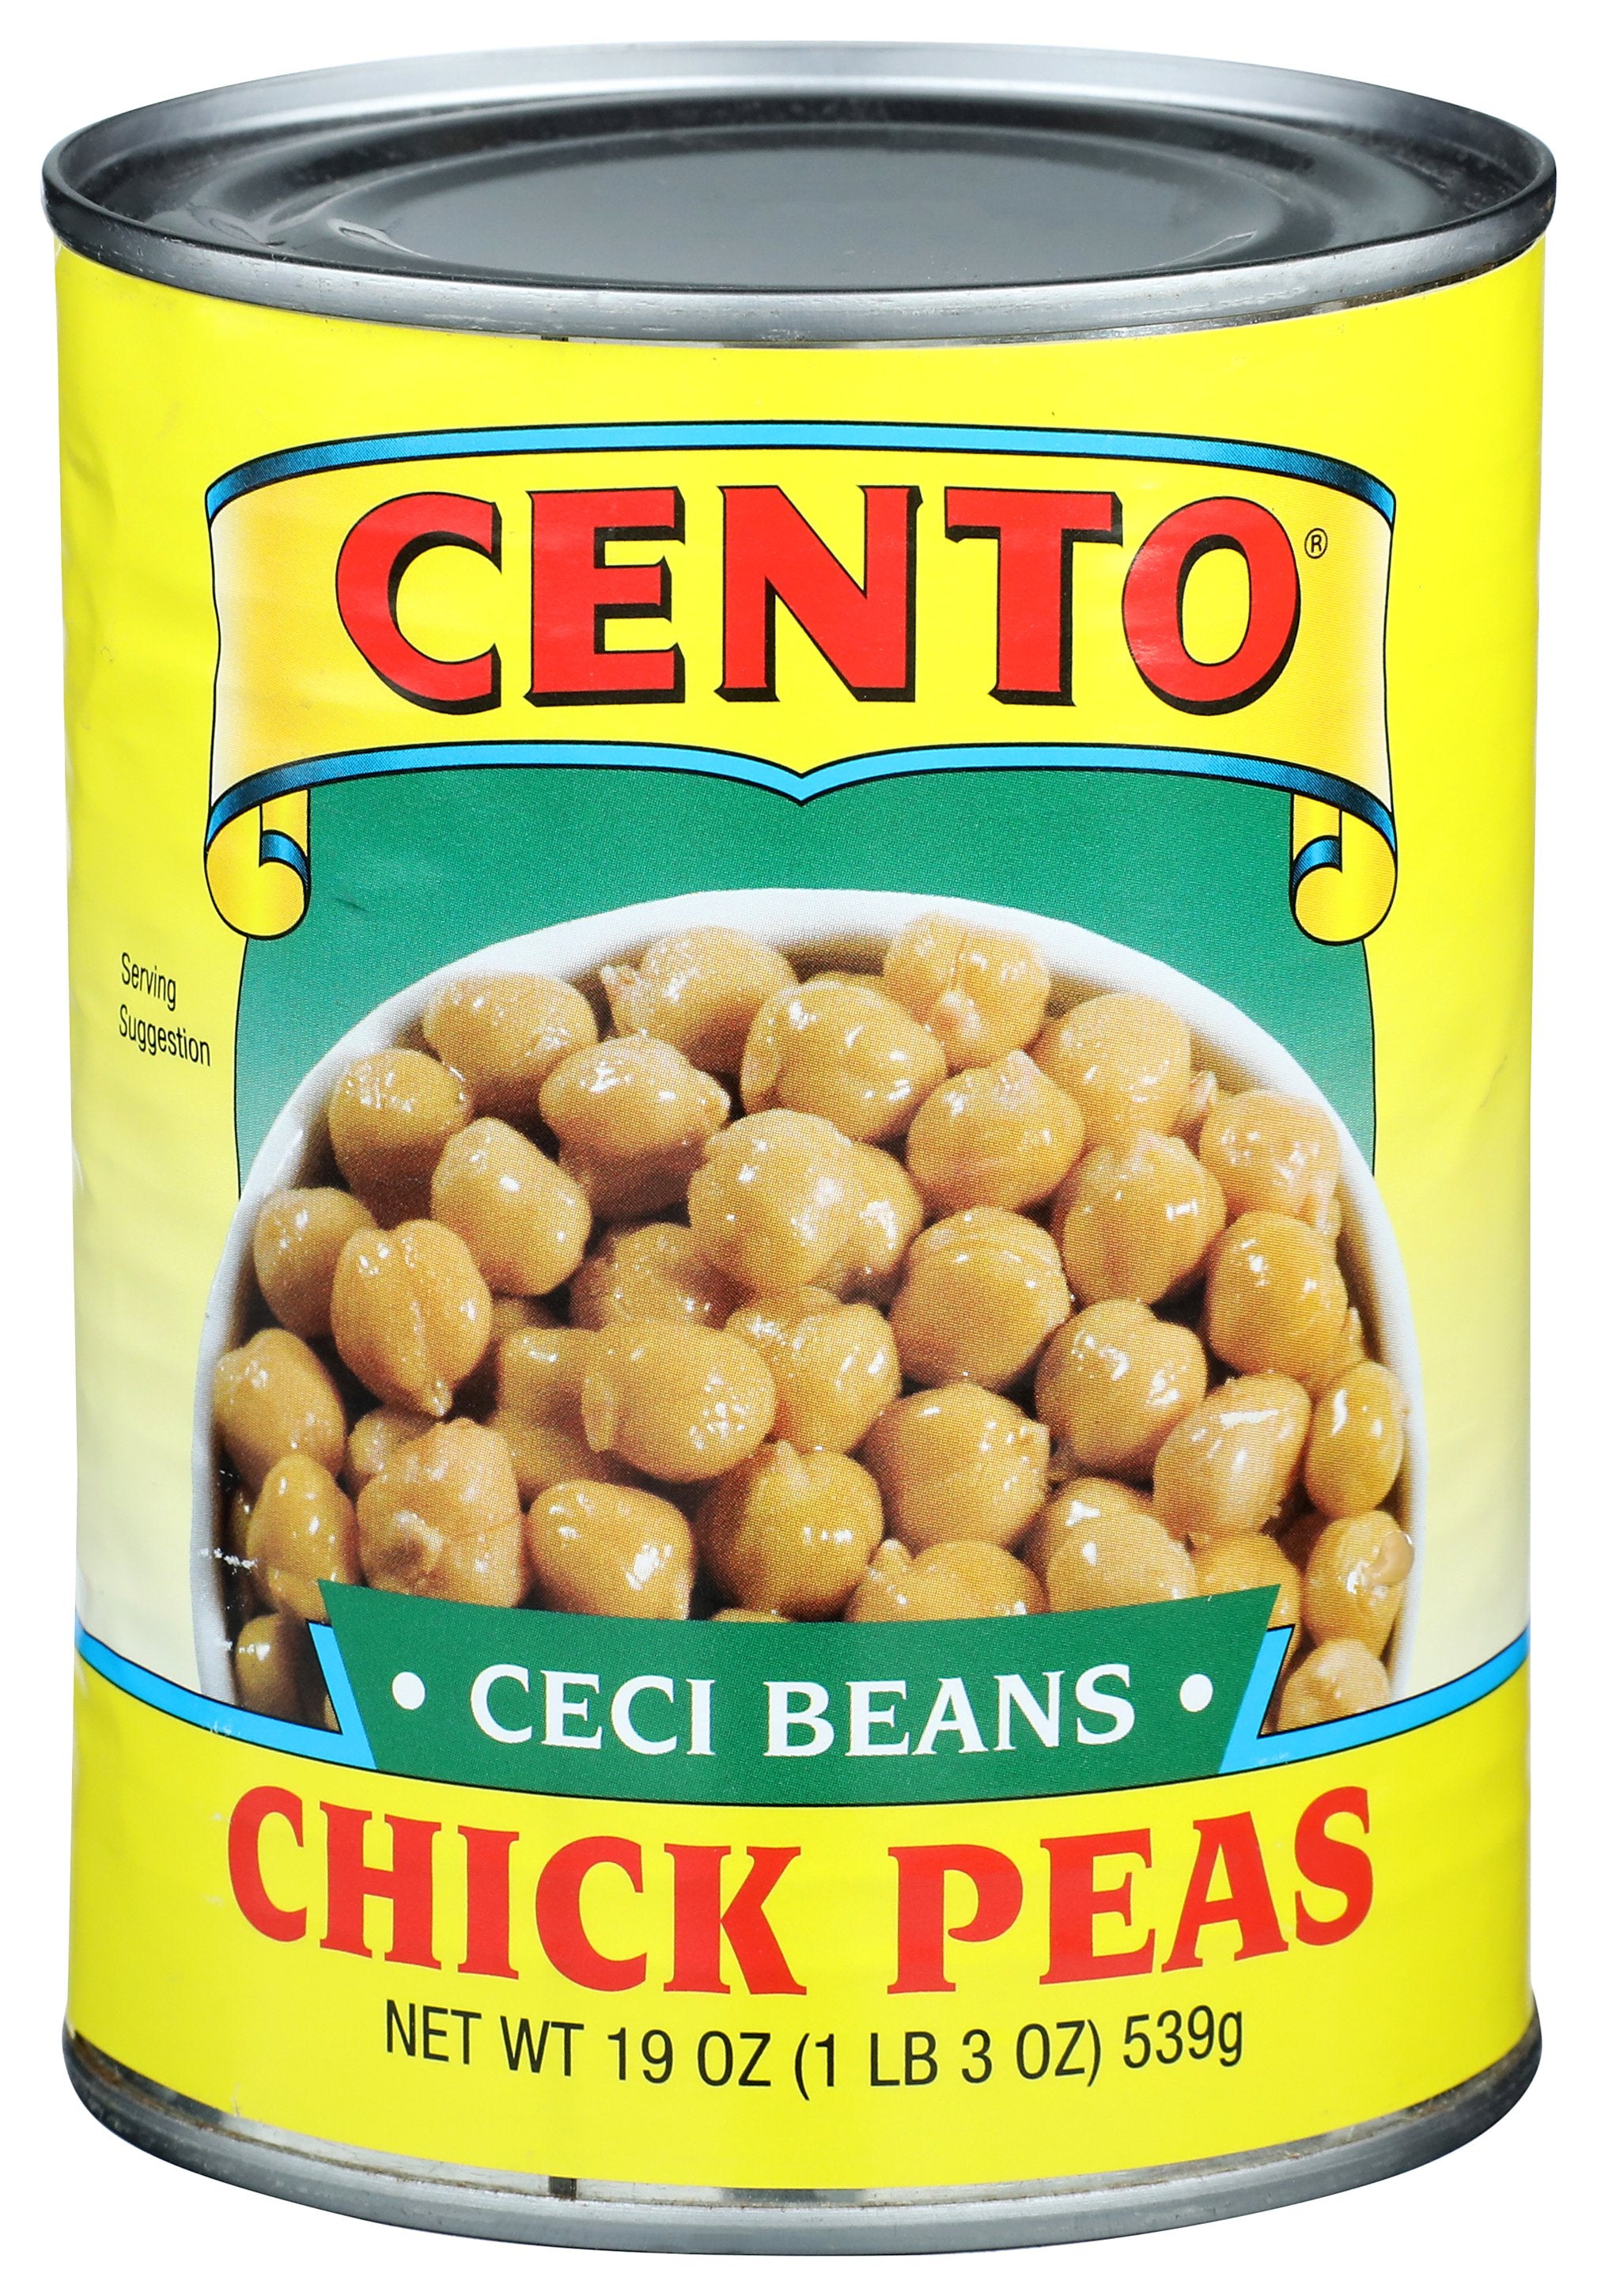 CENTO PEA CHICK (CECI BEAN) - Case of 12